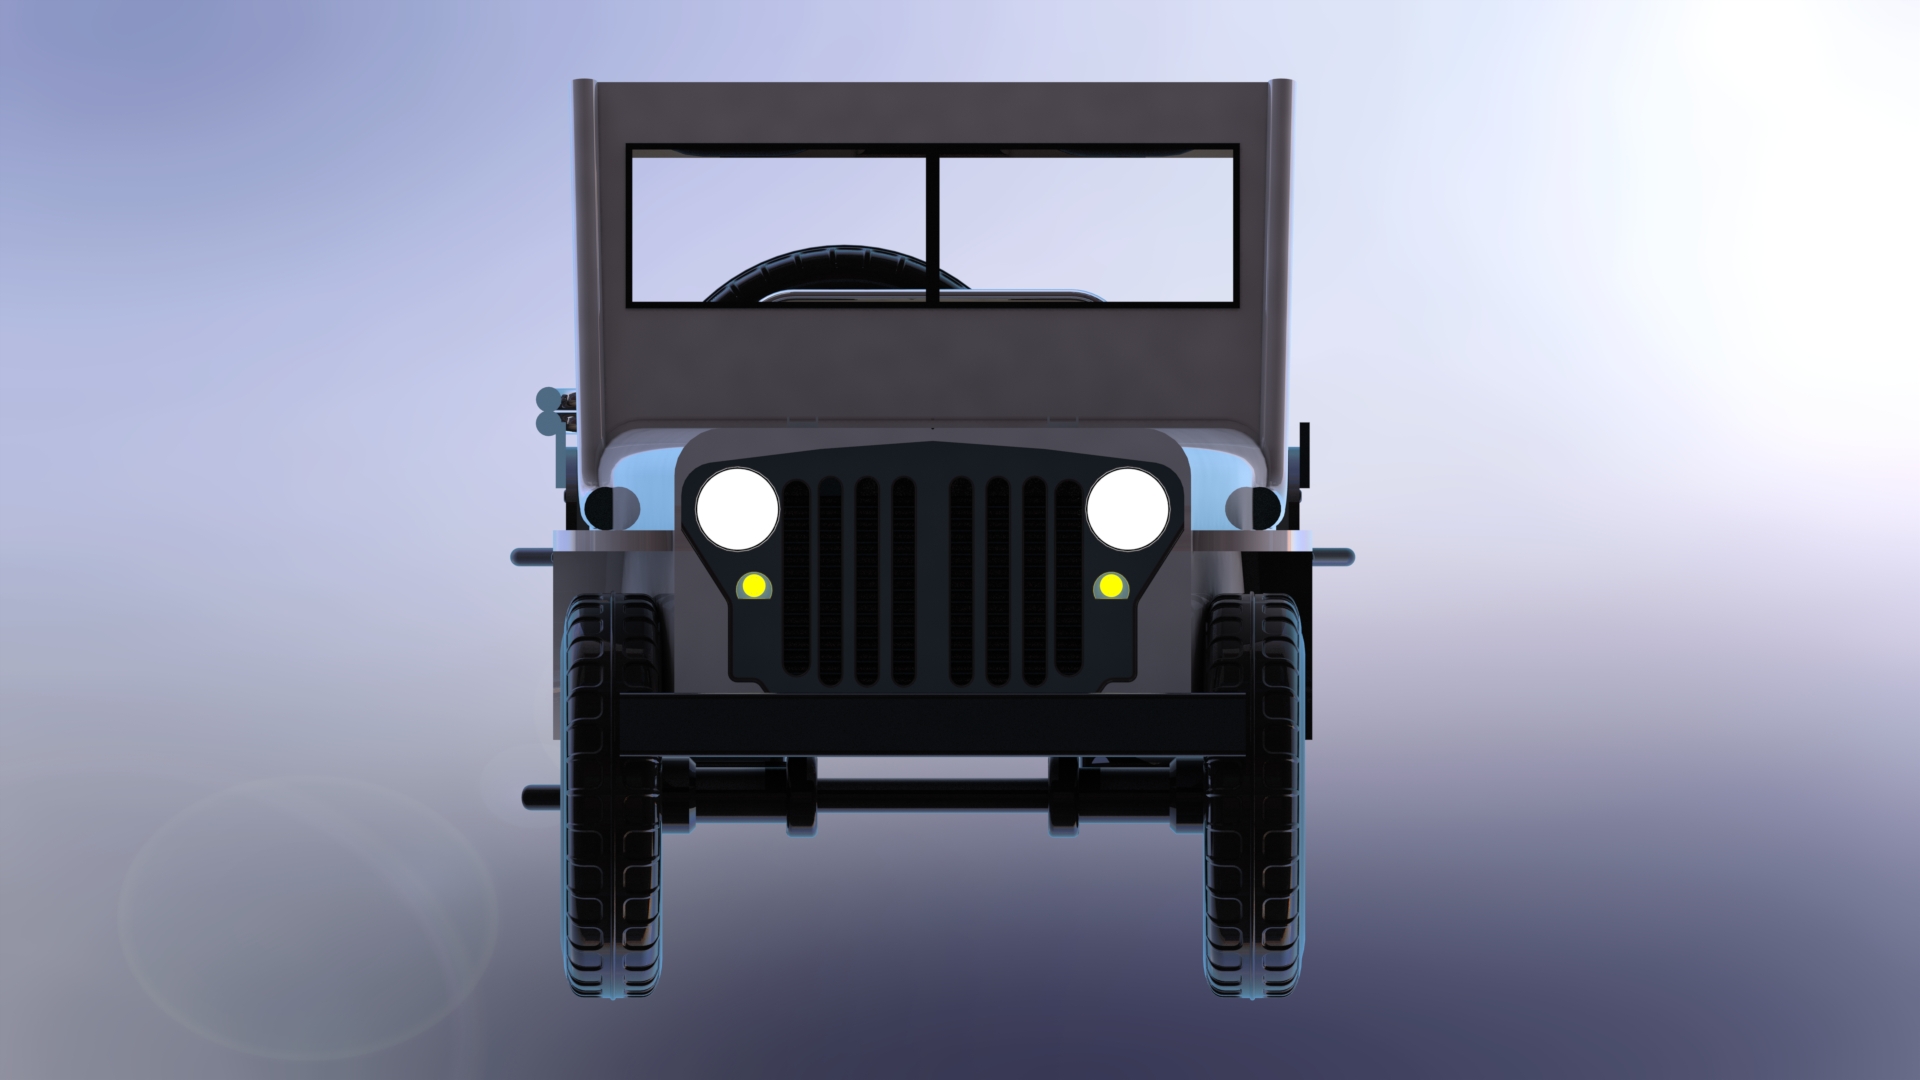 Askeri jeep-4x4玩具吉普车